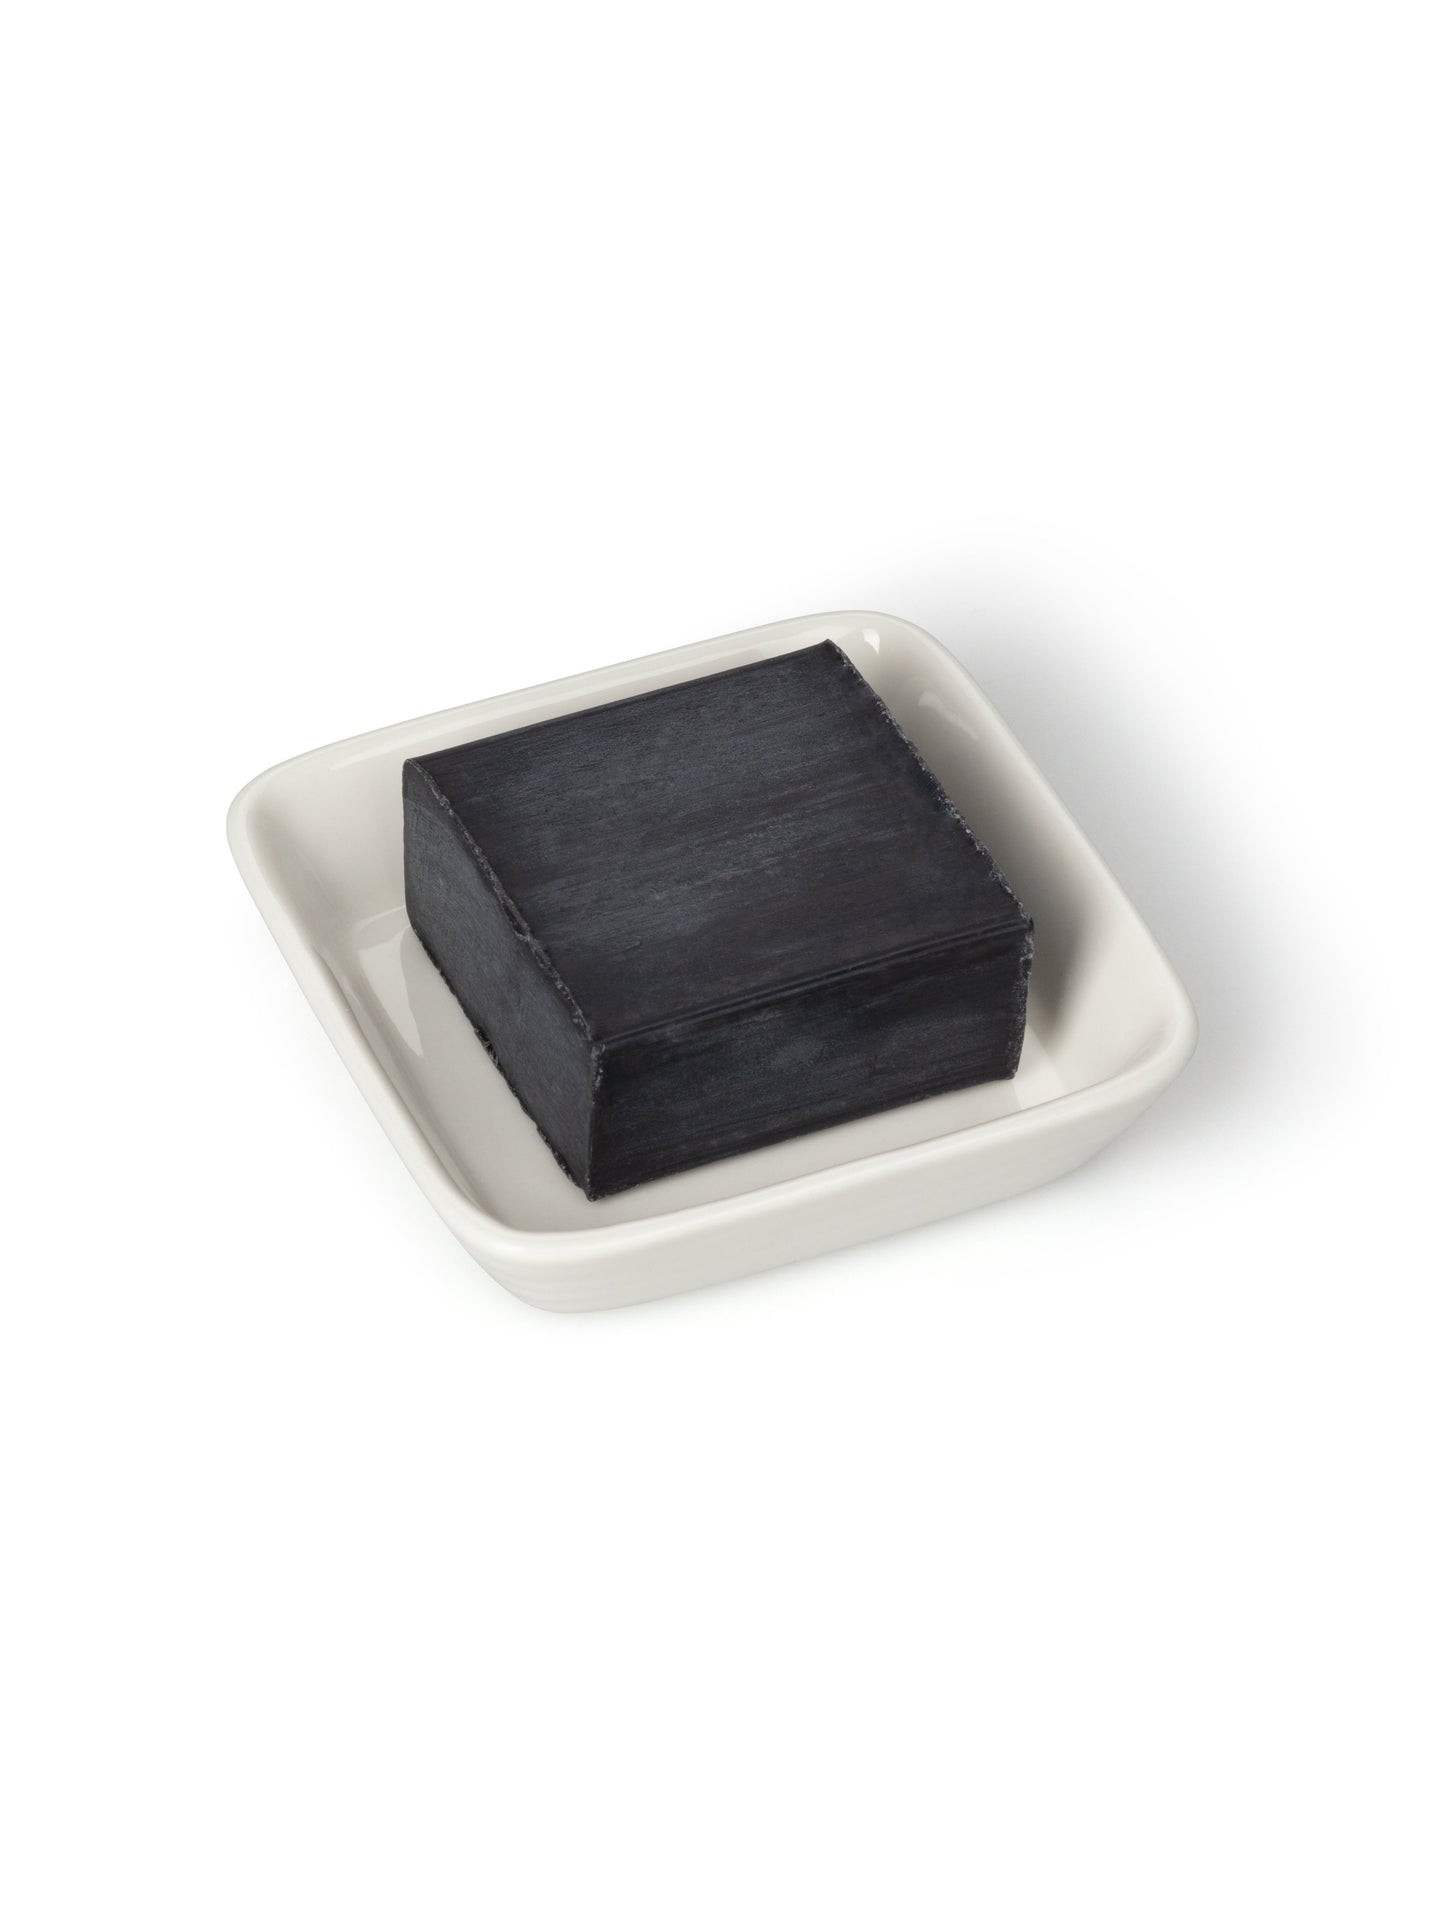 Soap Bar | Black Pomegranate Chalk The White Room